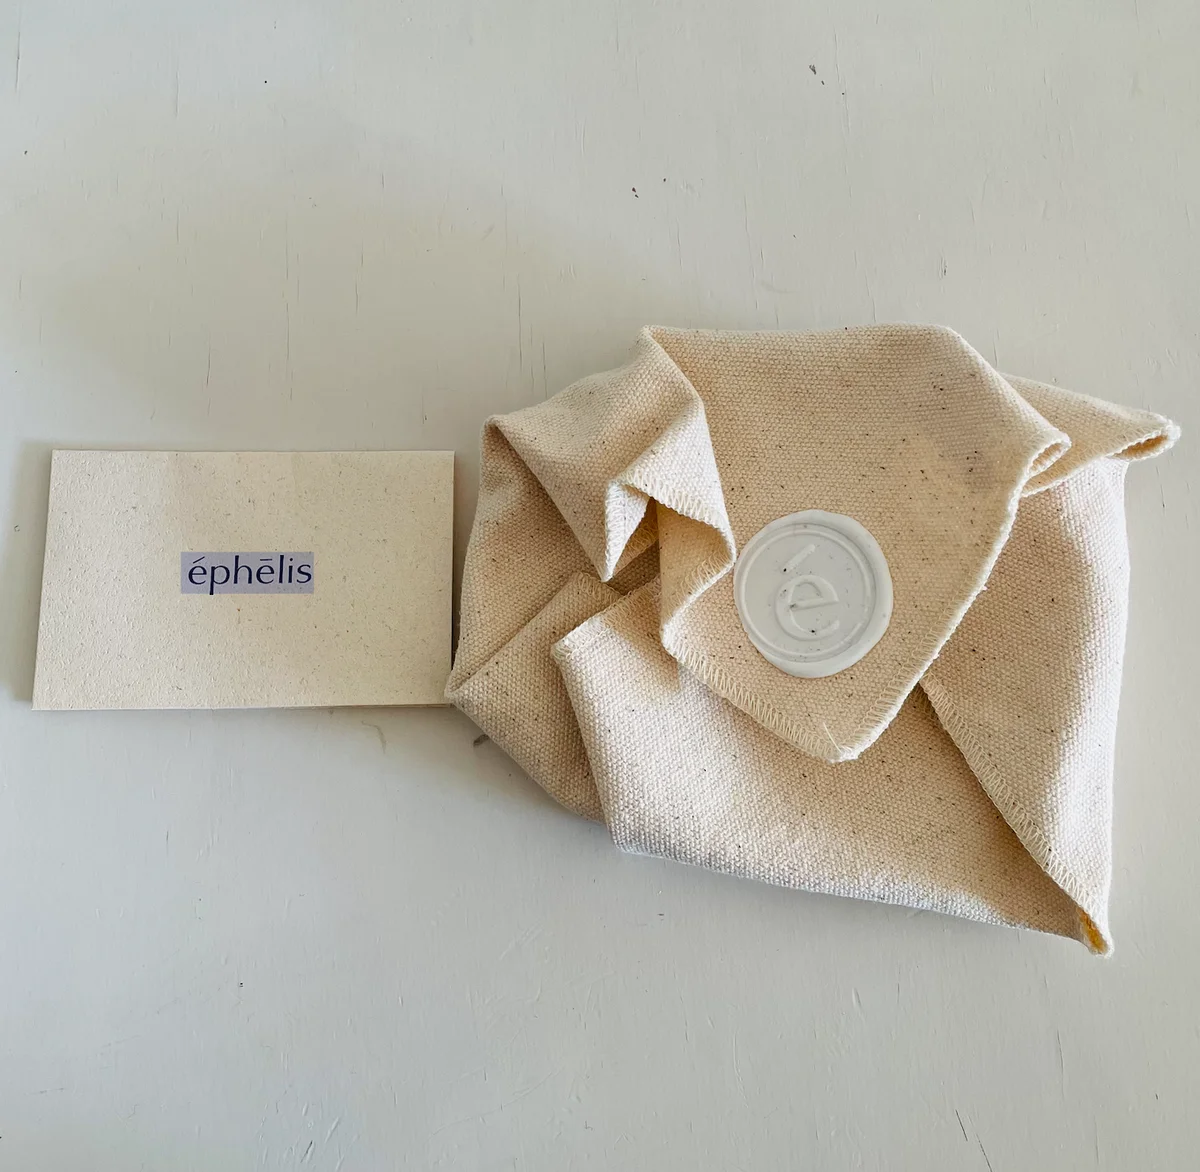 ephelisのパッケージ